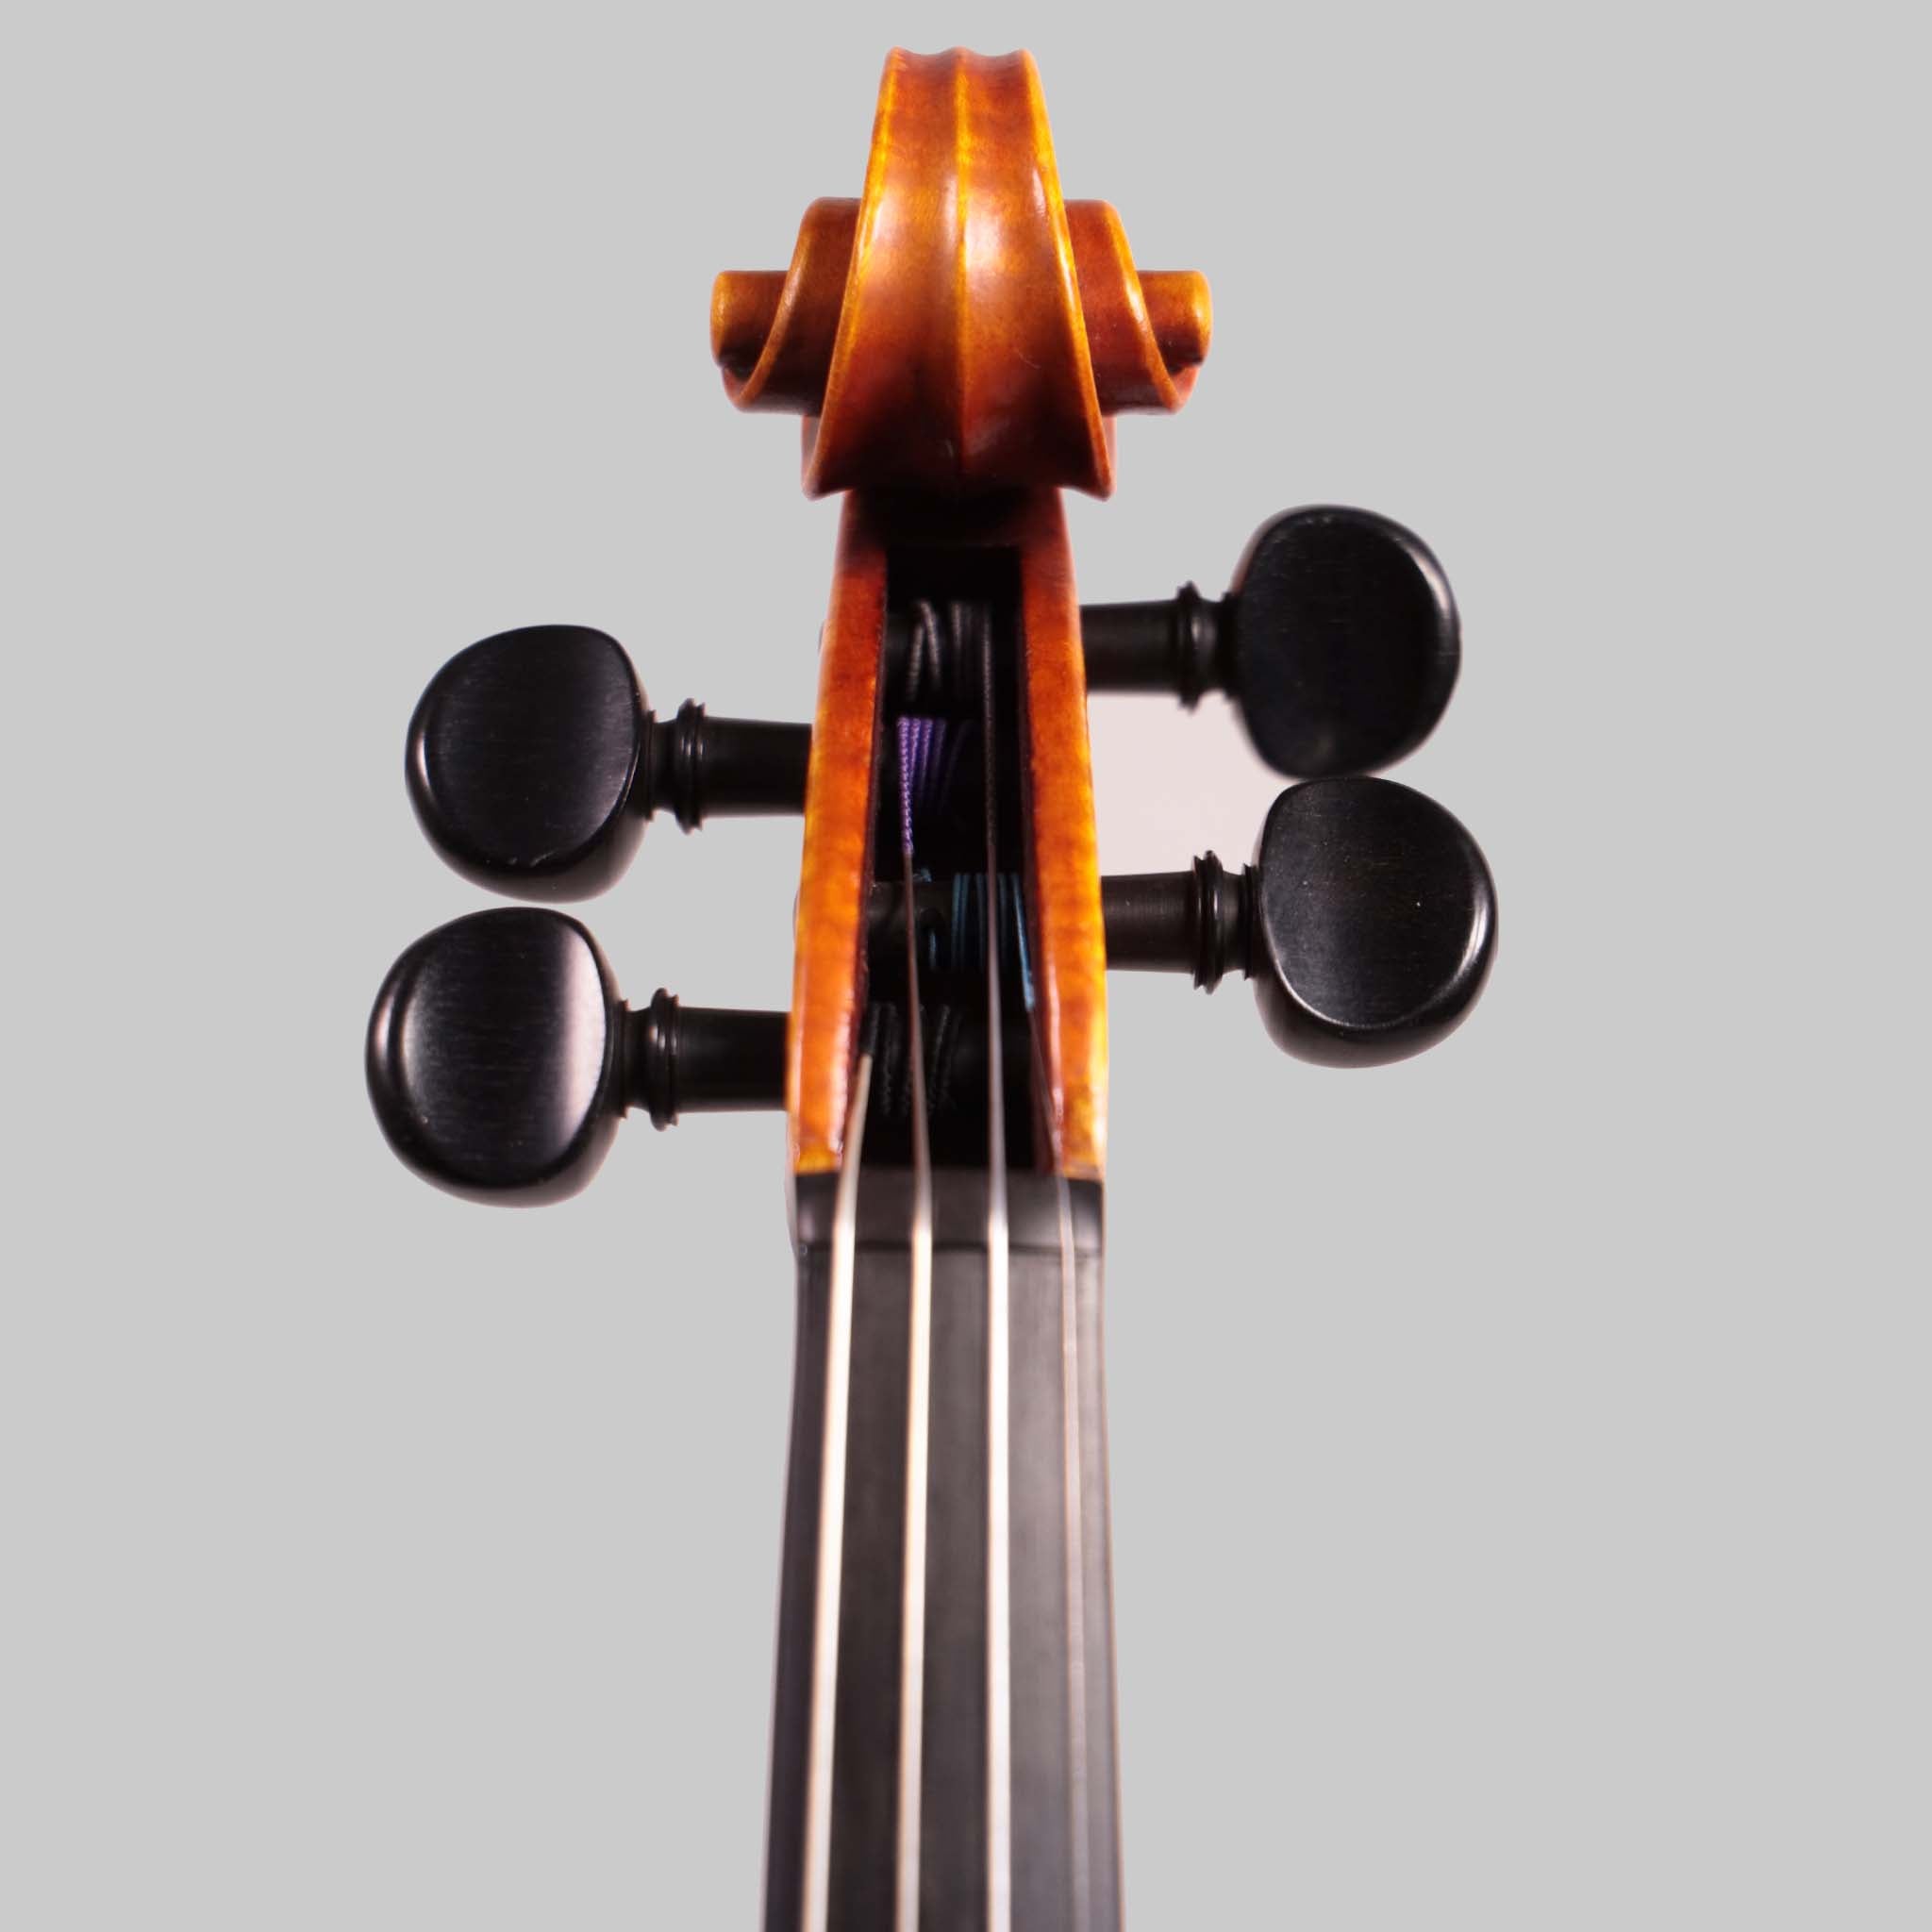 Theodore Heinrich, Markneukirchen Germany 1921 Violin (FS291)